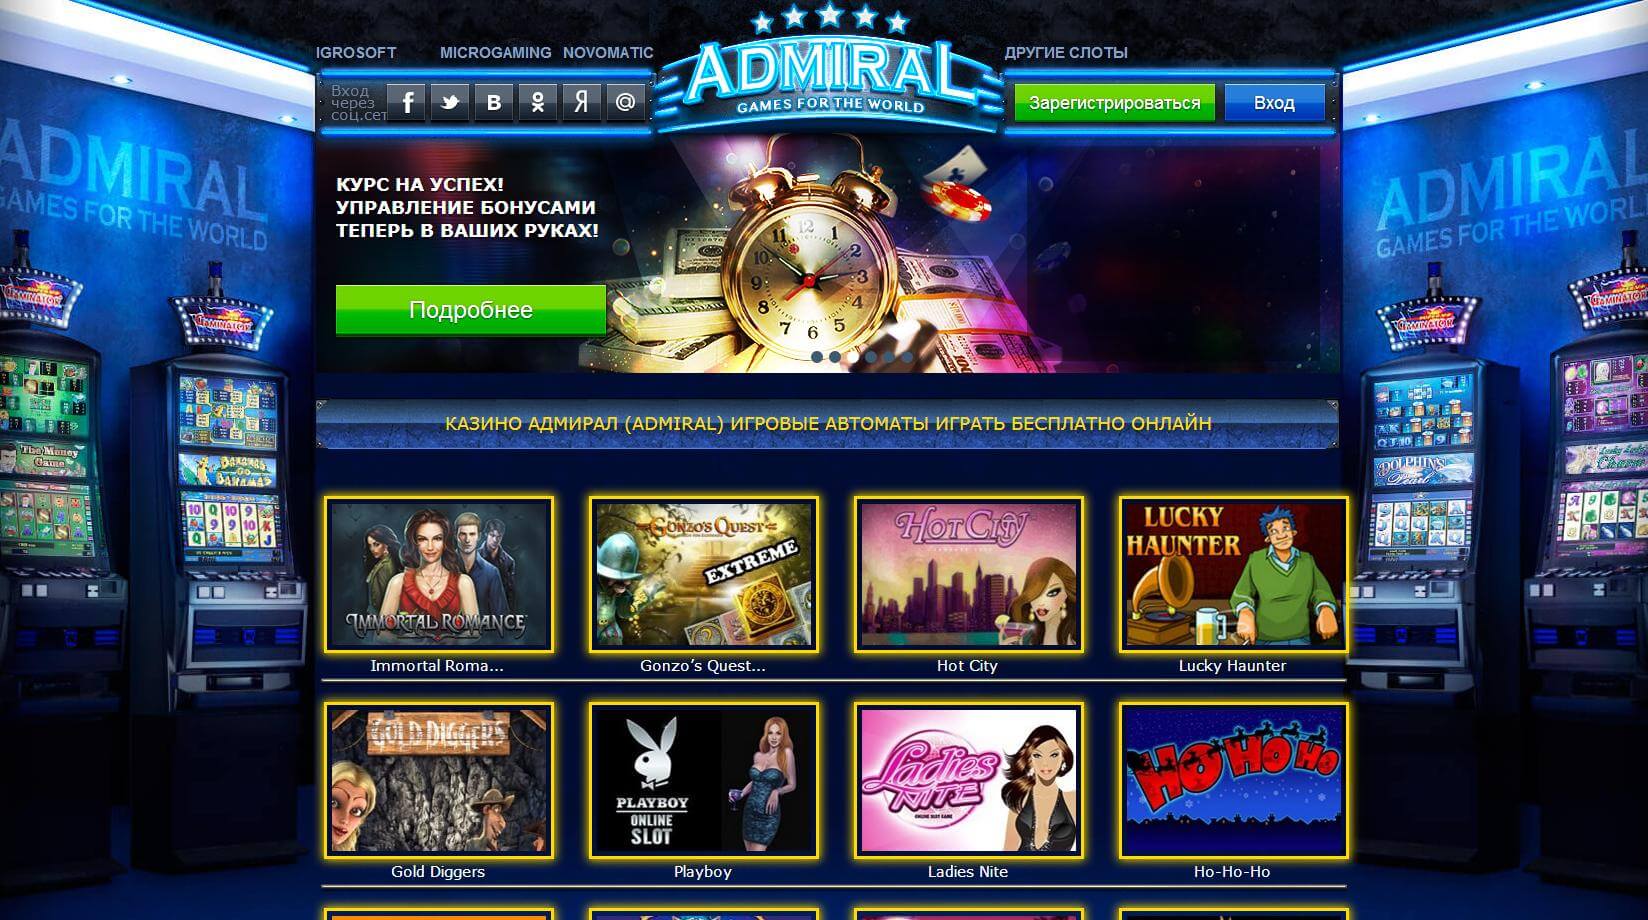 Адмирал казино онлайн официальный сайт музыкальный фестиваль в казино